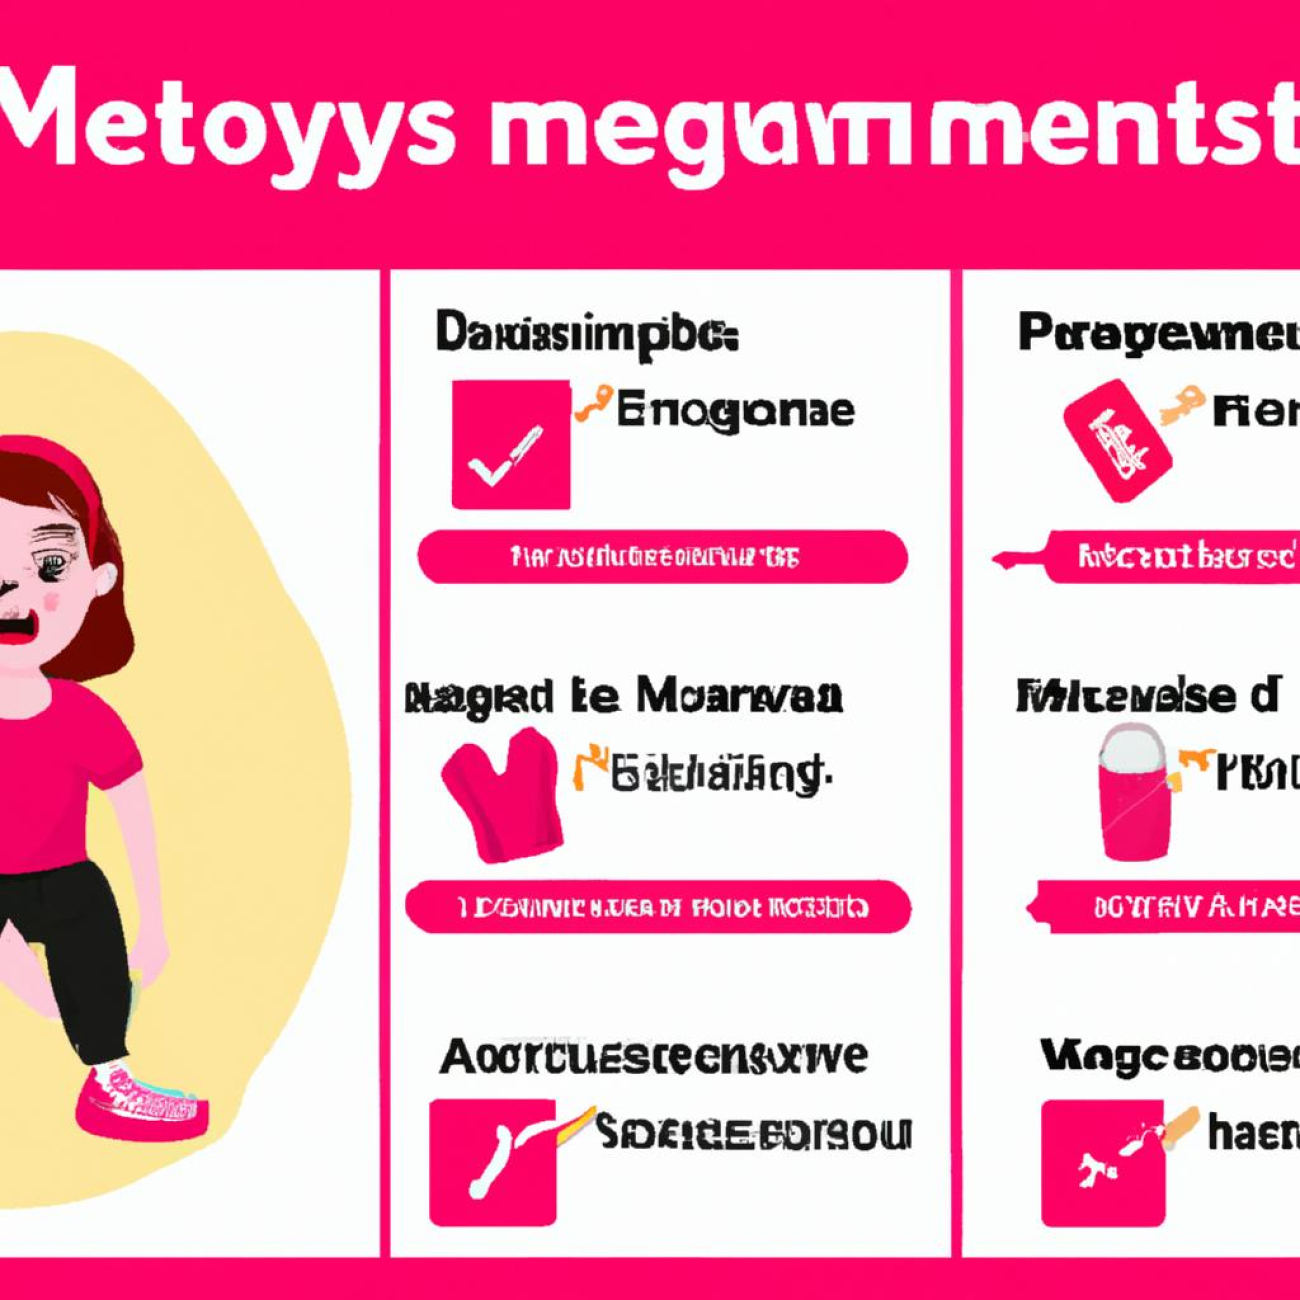 Doporučené cvičební aktivity během menstruace